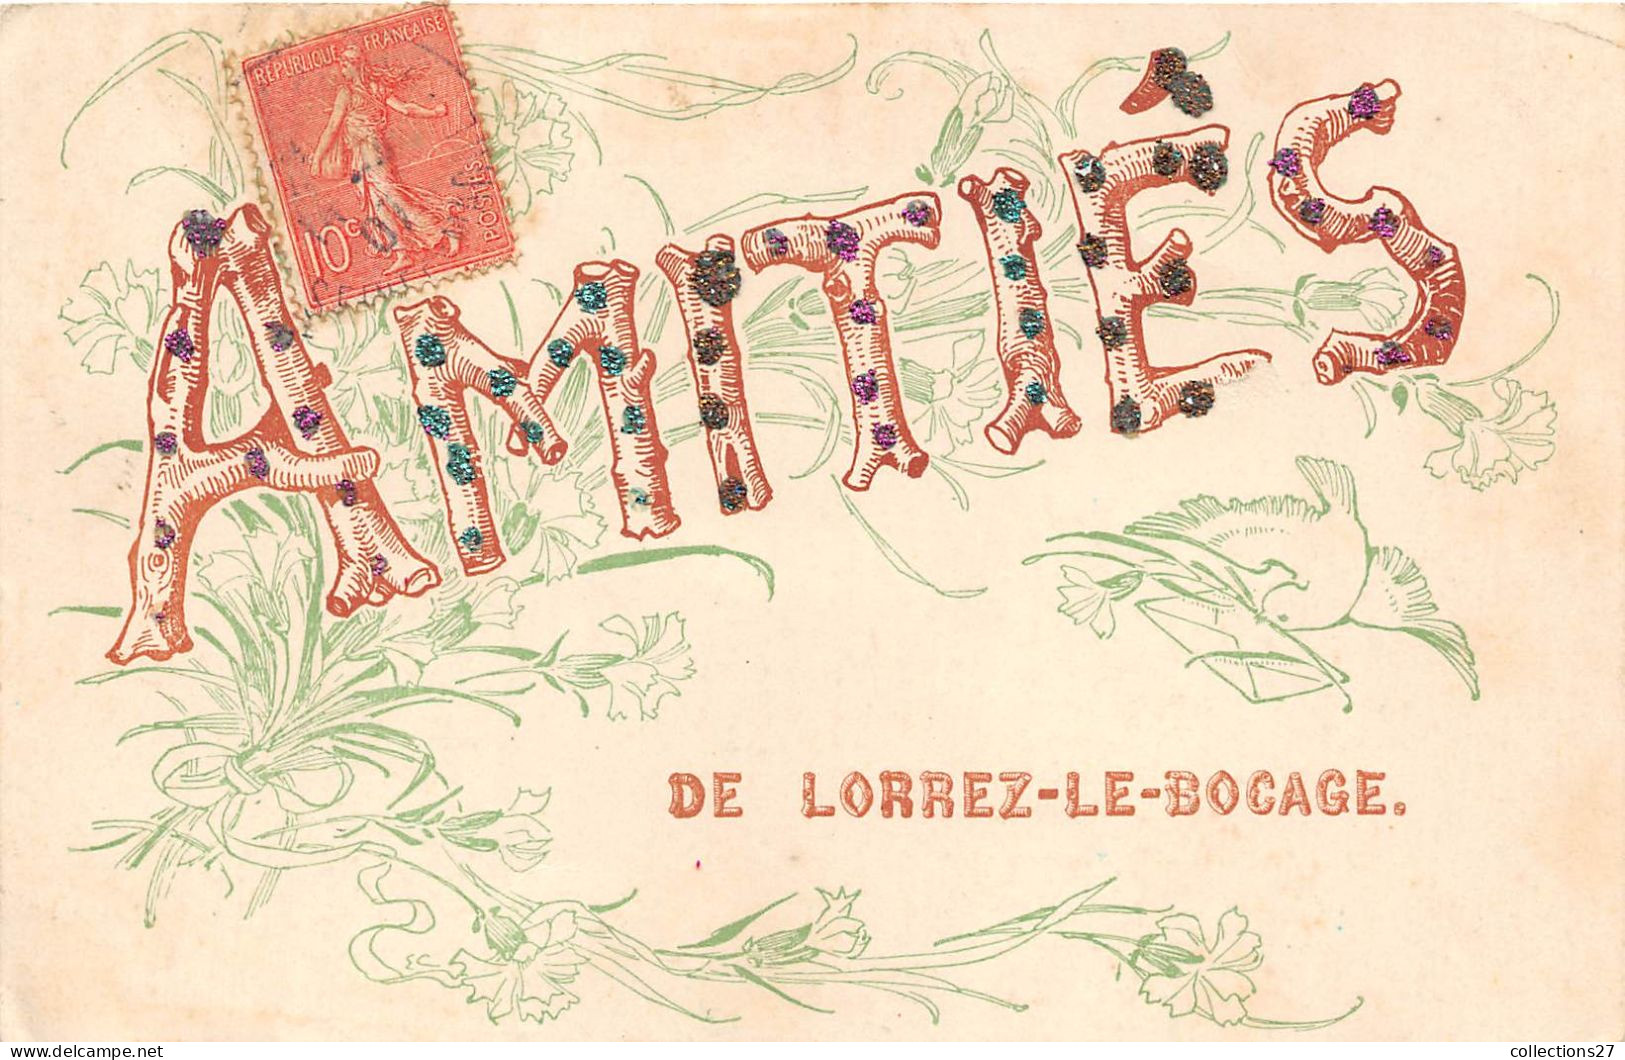 77-LORREZ-LE-BOCAGE- AMITIES DE LORREZ-LE-BOCAGE - Lorrez Le Bocage Preaux